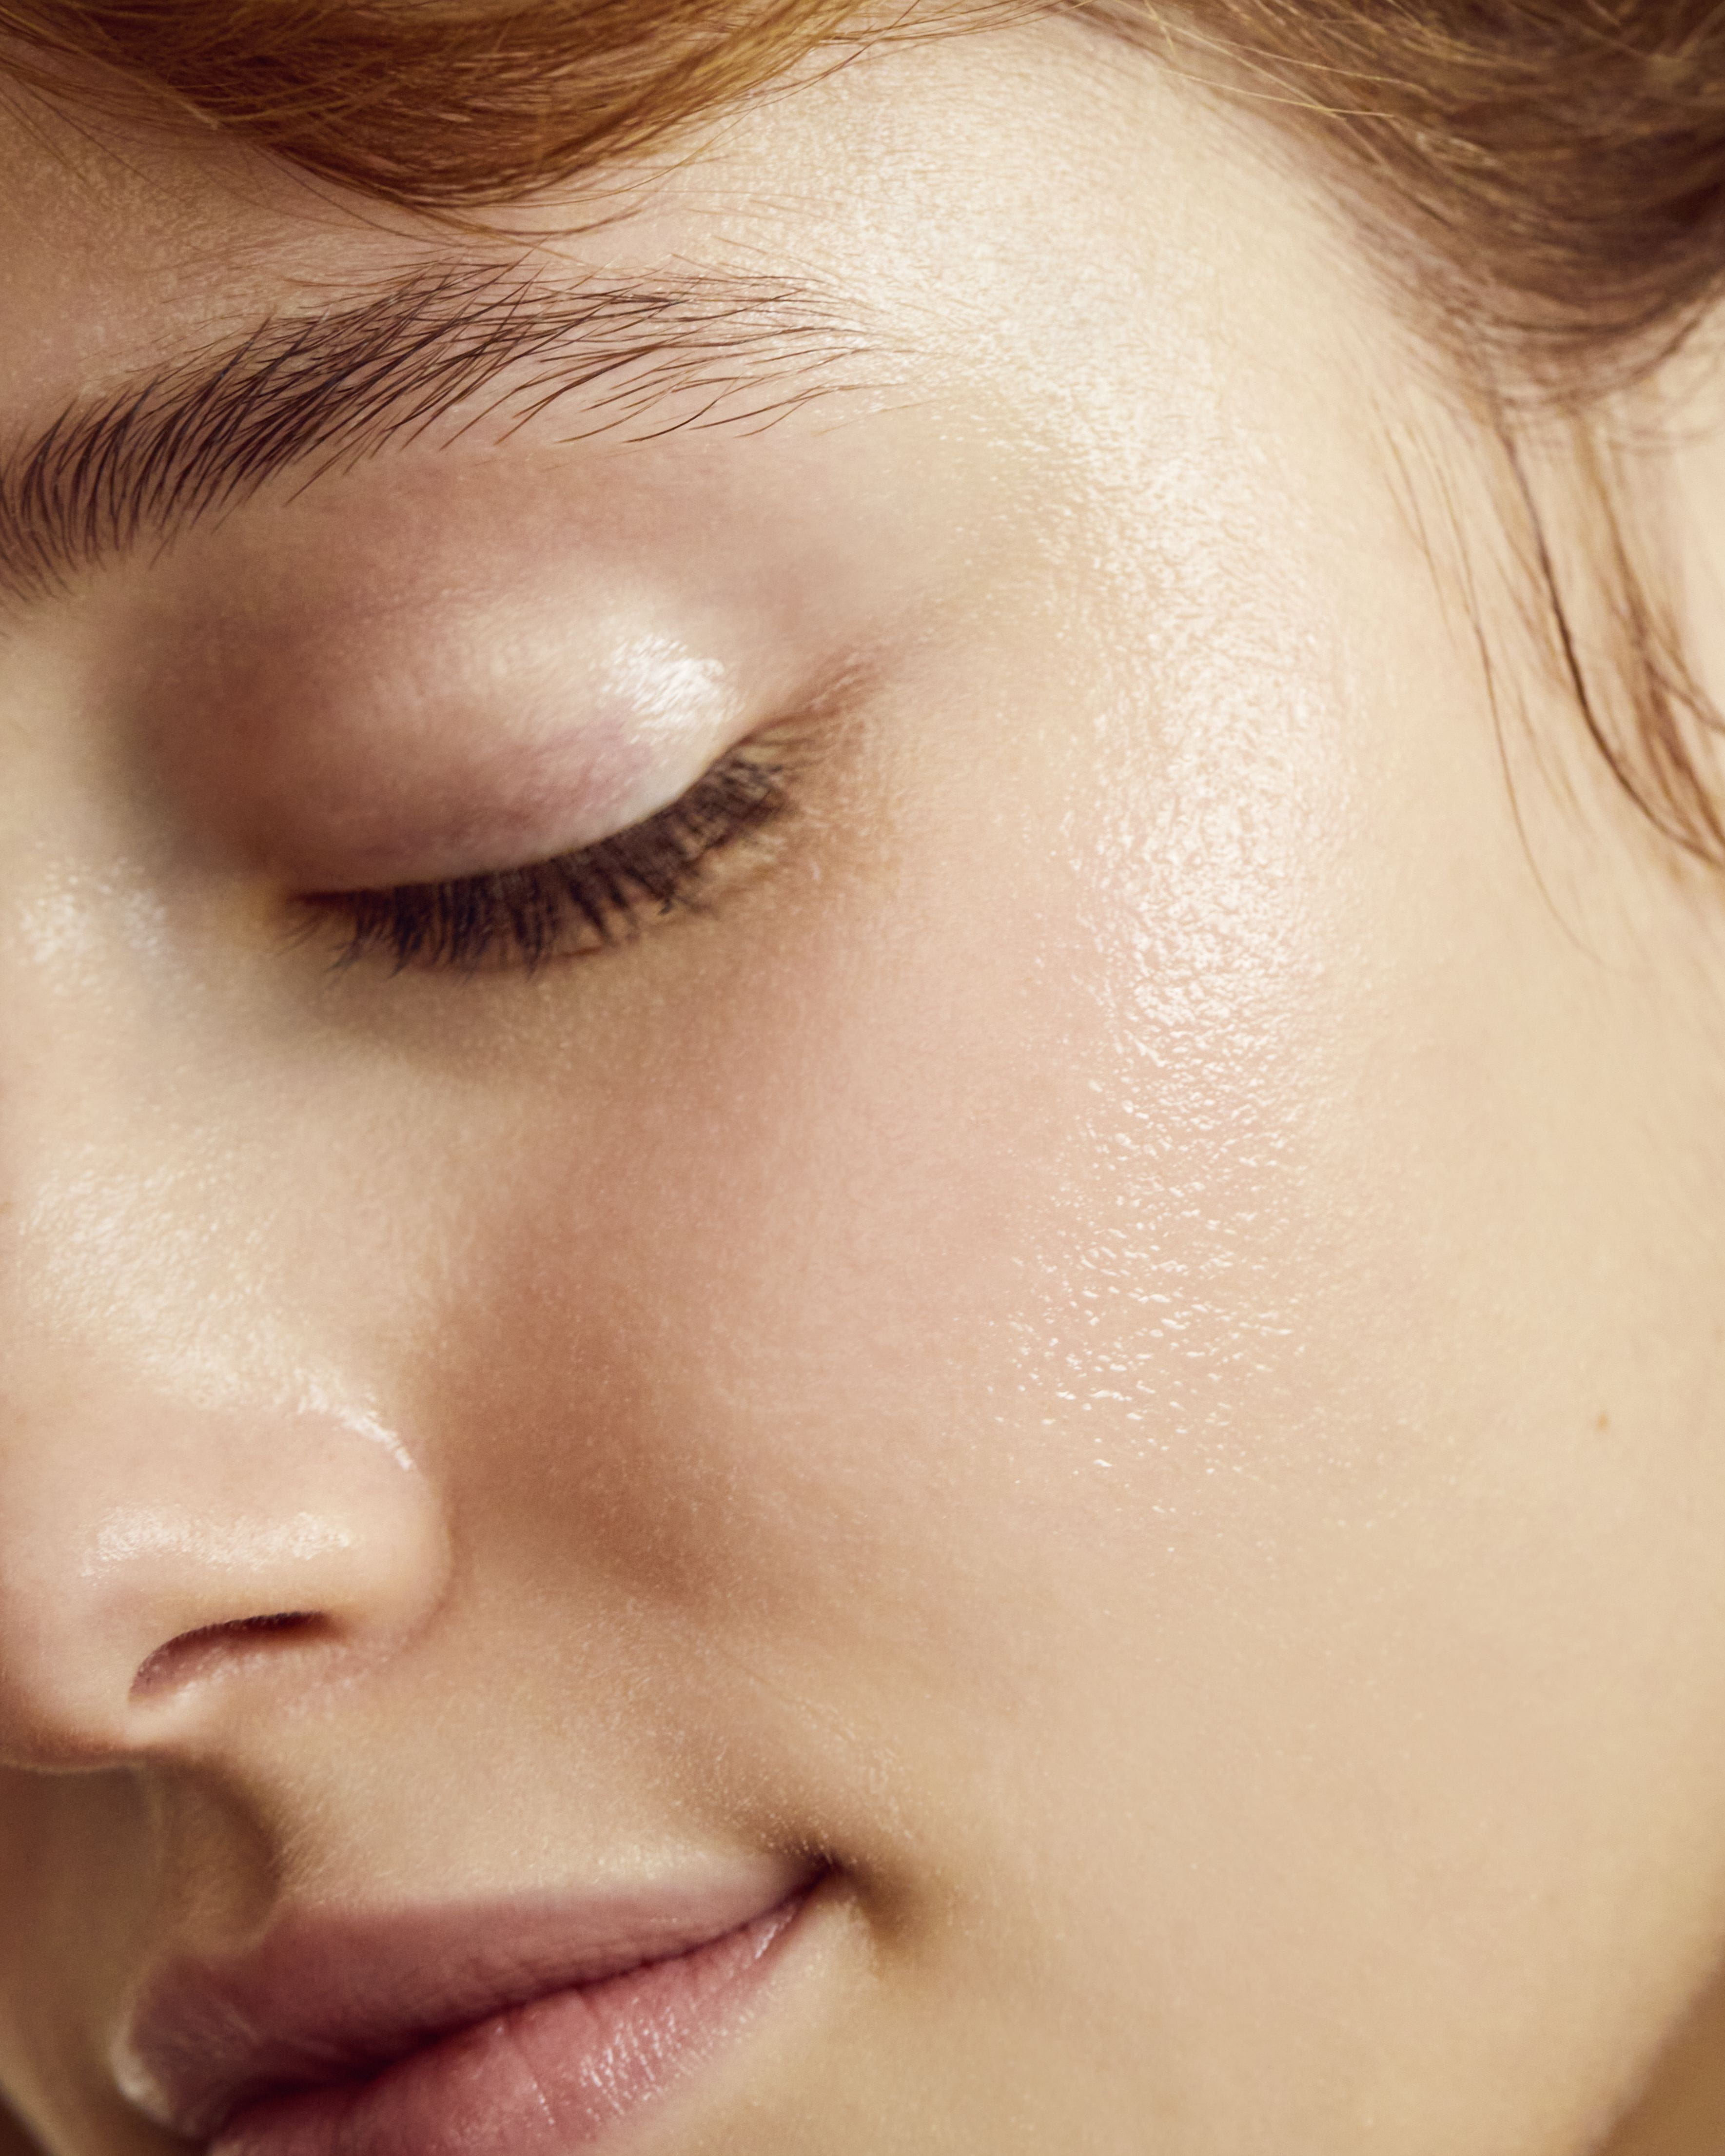 Cómo se hace el masaje facial con rodillo de jade y sus beneficios para la  piel